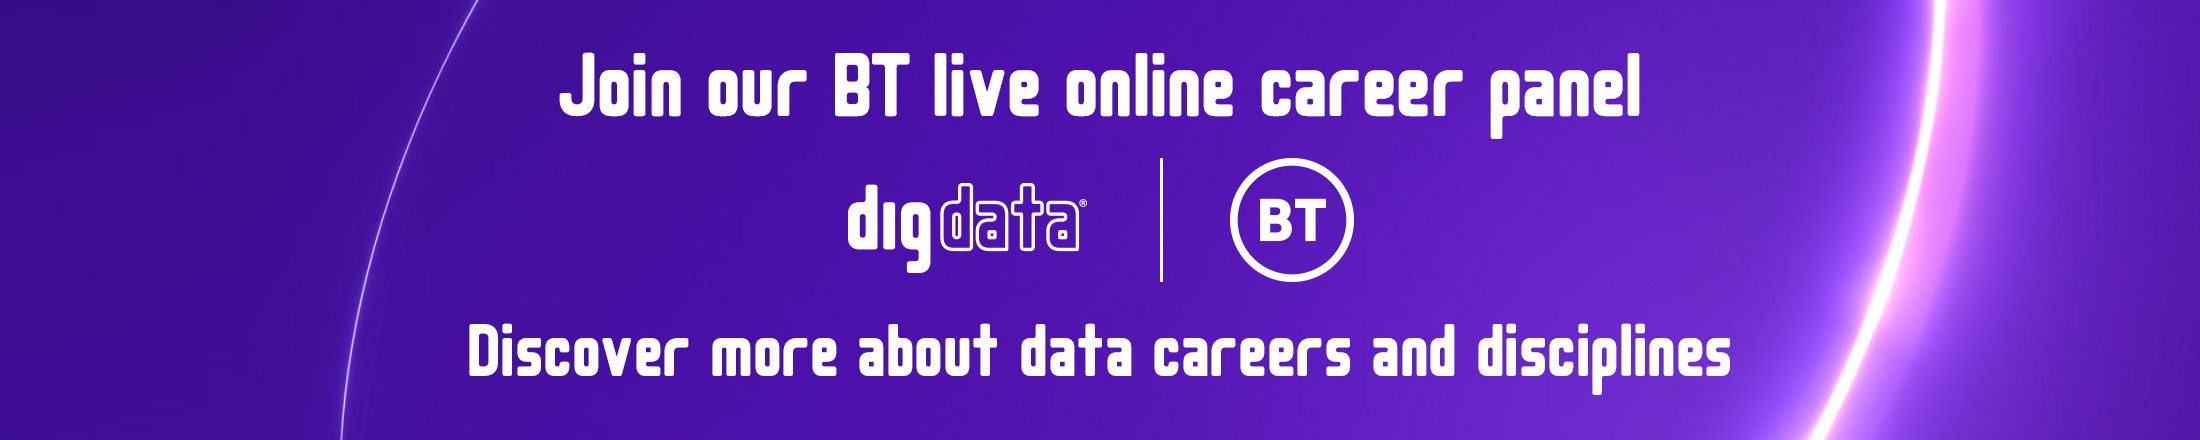 Digdata BT Career Panel Banner